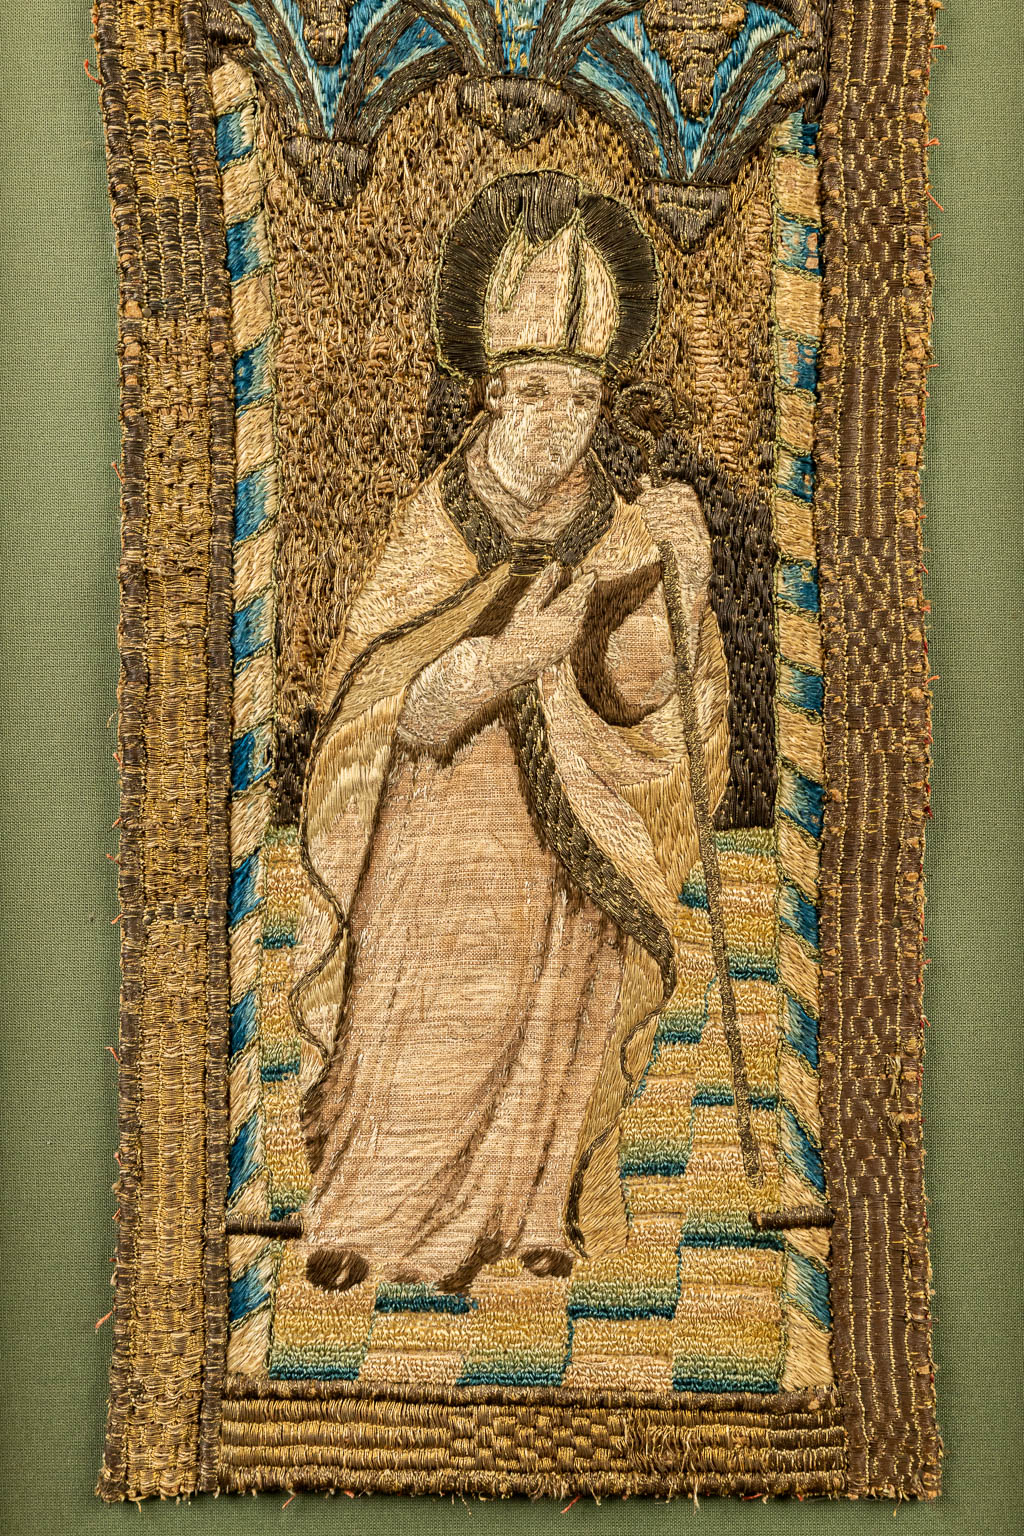 Een paar fragmenten van een kazuifel of priestergewaad met afbeeldingen van Heiligen. (H:92cm)